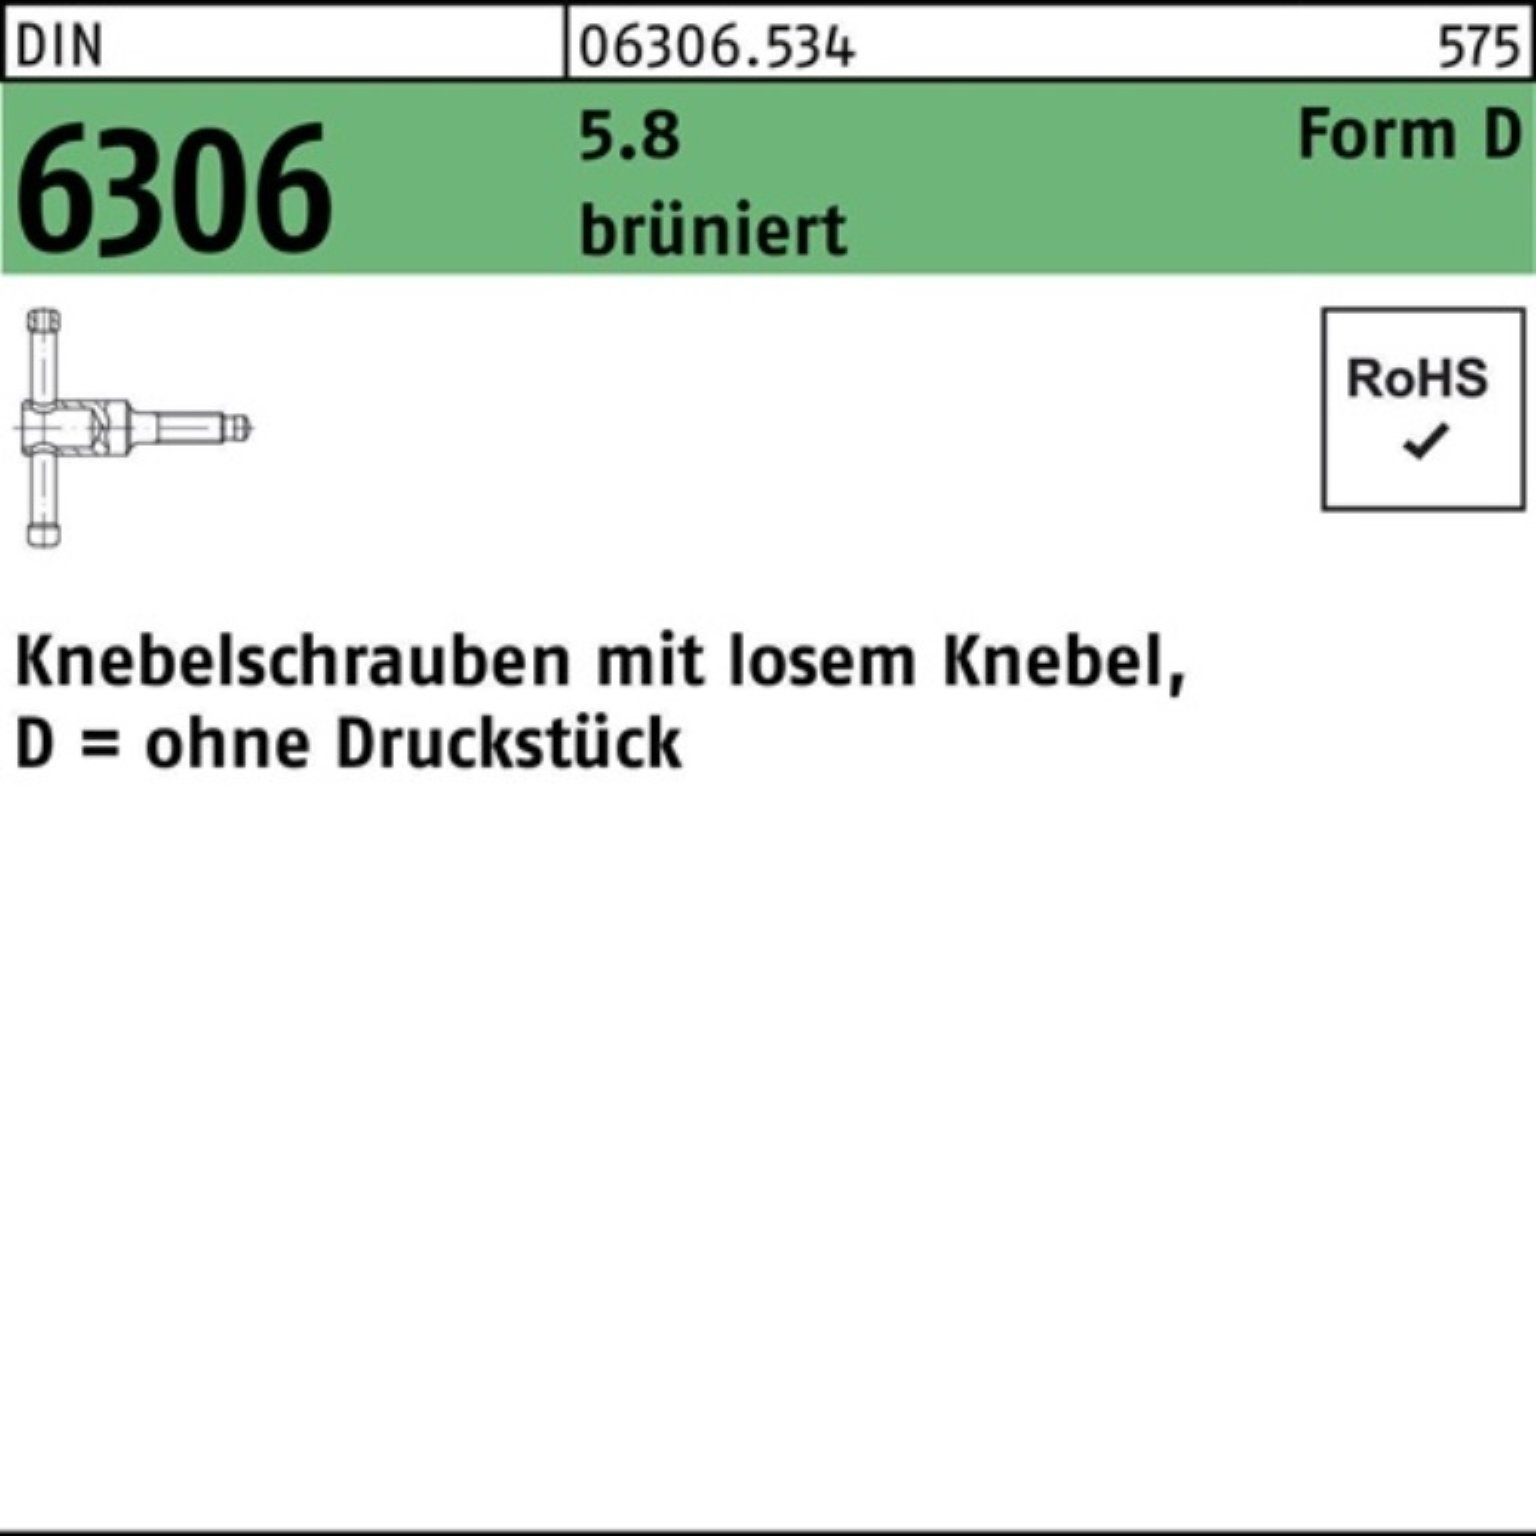 Reyher Schraube 100er Pack 5.8 Knebelschraube 6306 20x losen 70 DIN brünier DM Knebel